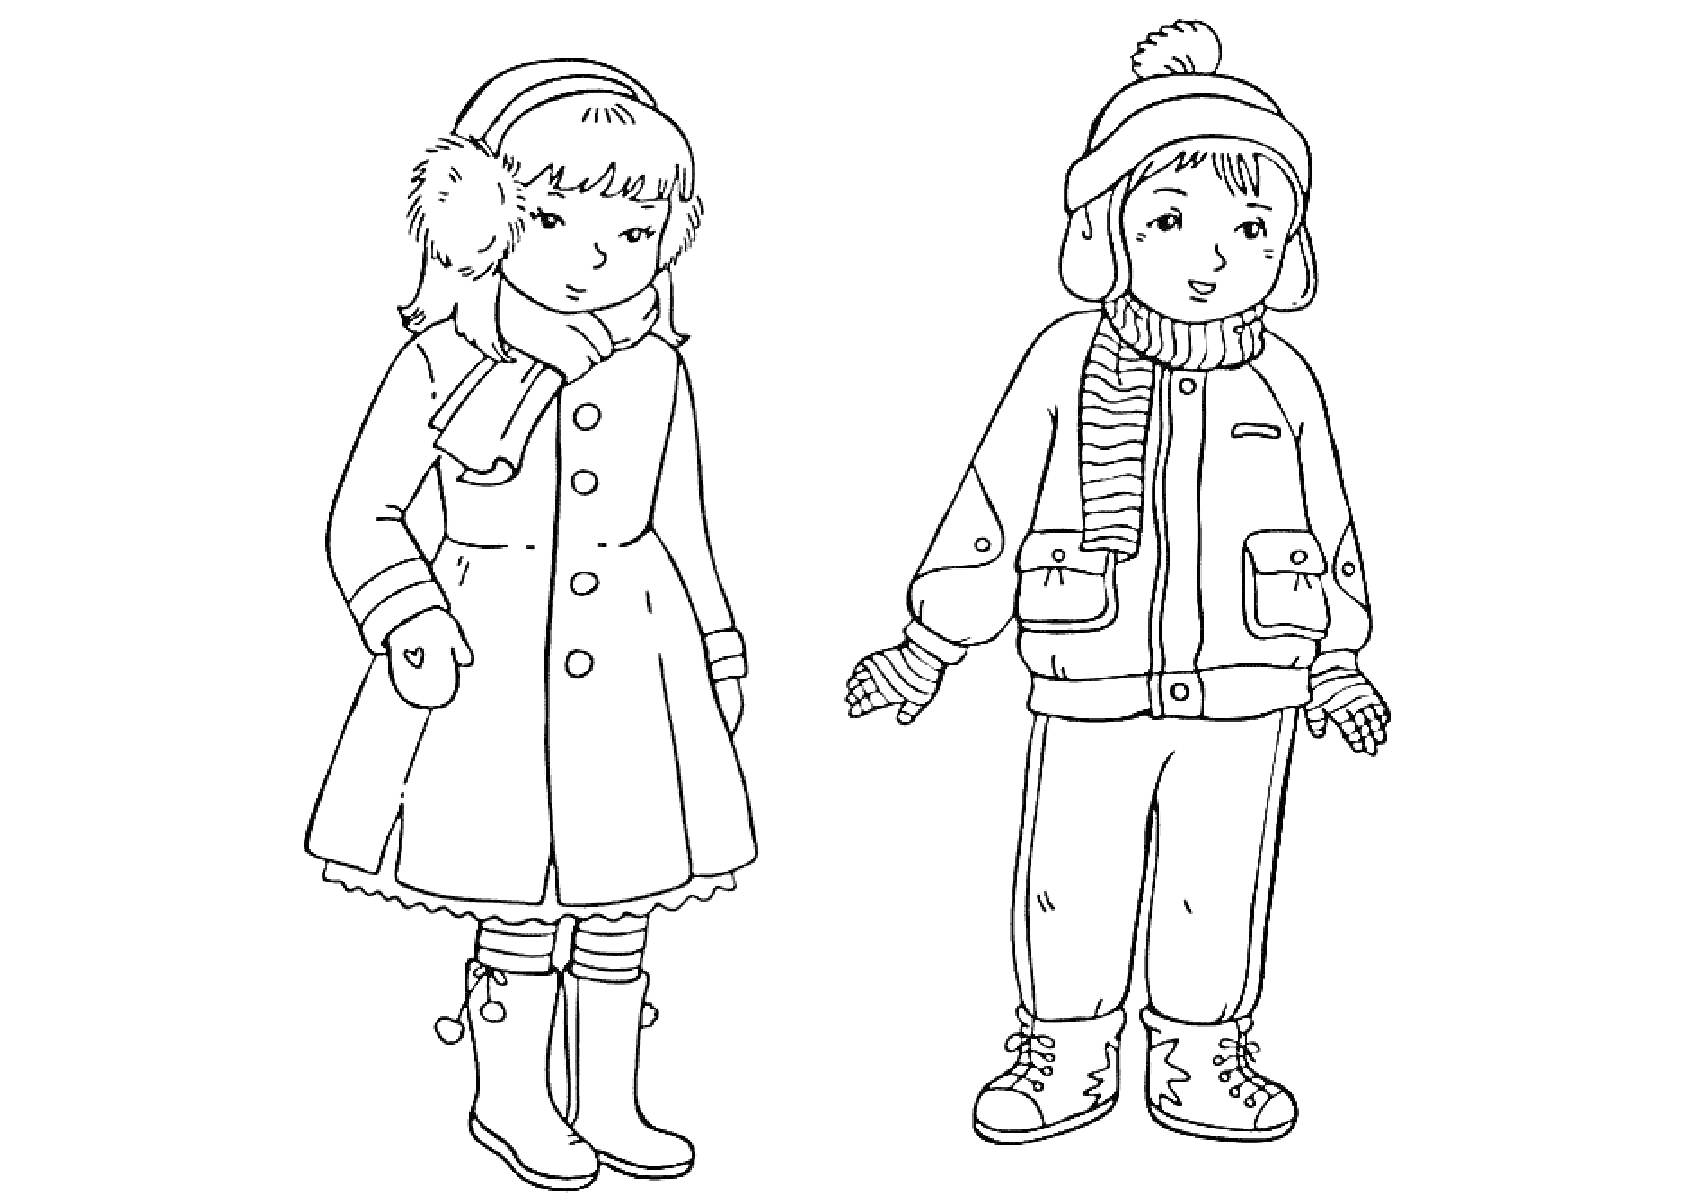 Дети в зимней одежде: девочка в пальто, шарфе, варежках, сапогах и наушниках; мальчик в куртке, шапке с помпоном, шарфе, брюках, варежках и ботинках